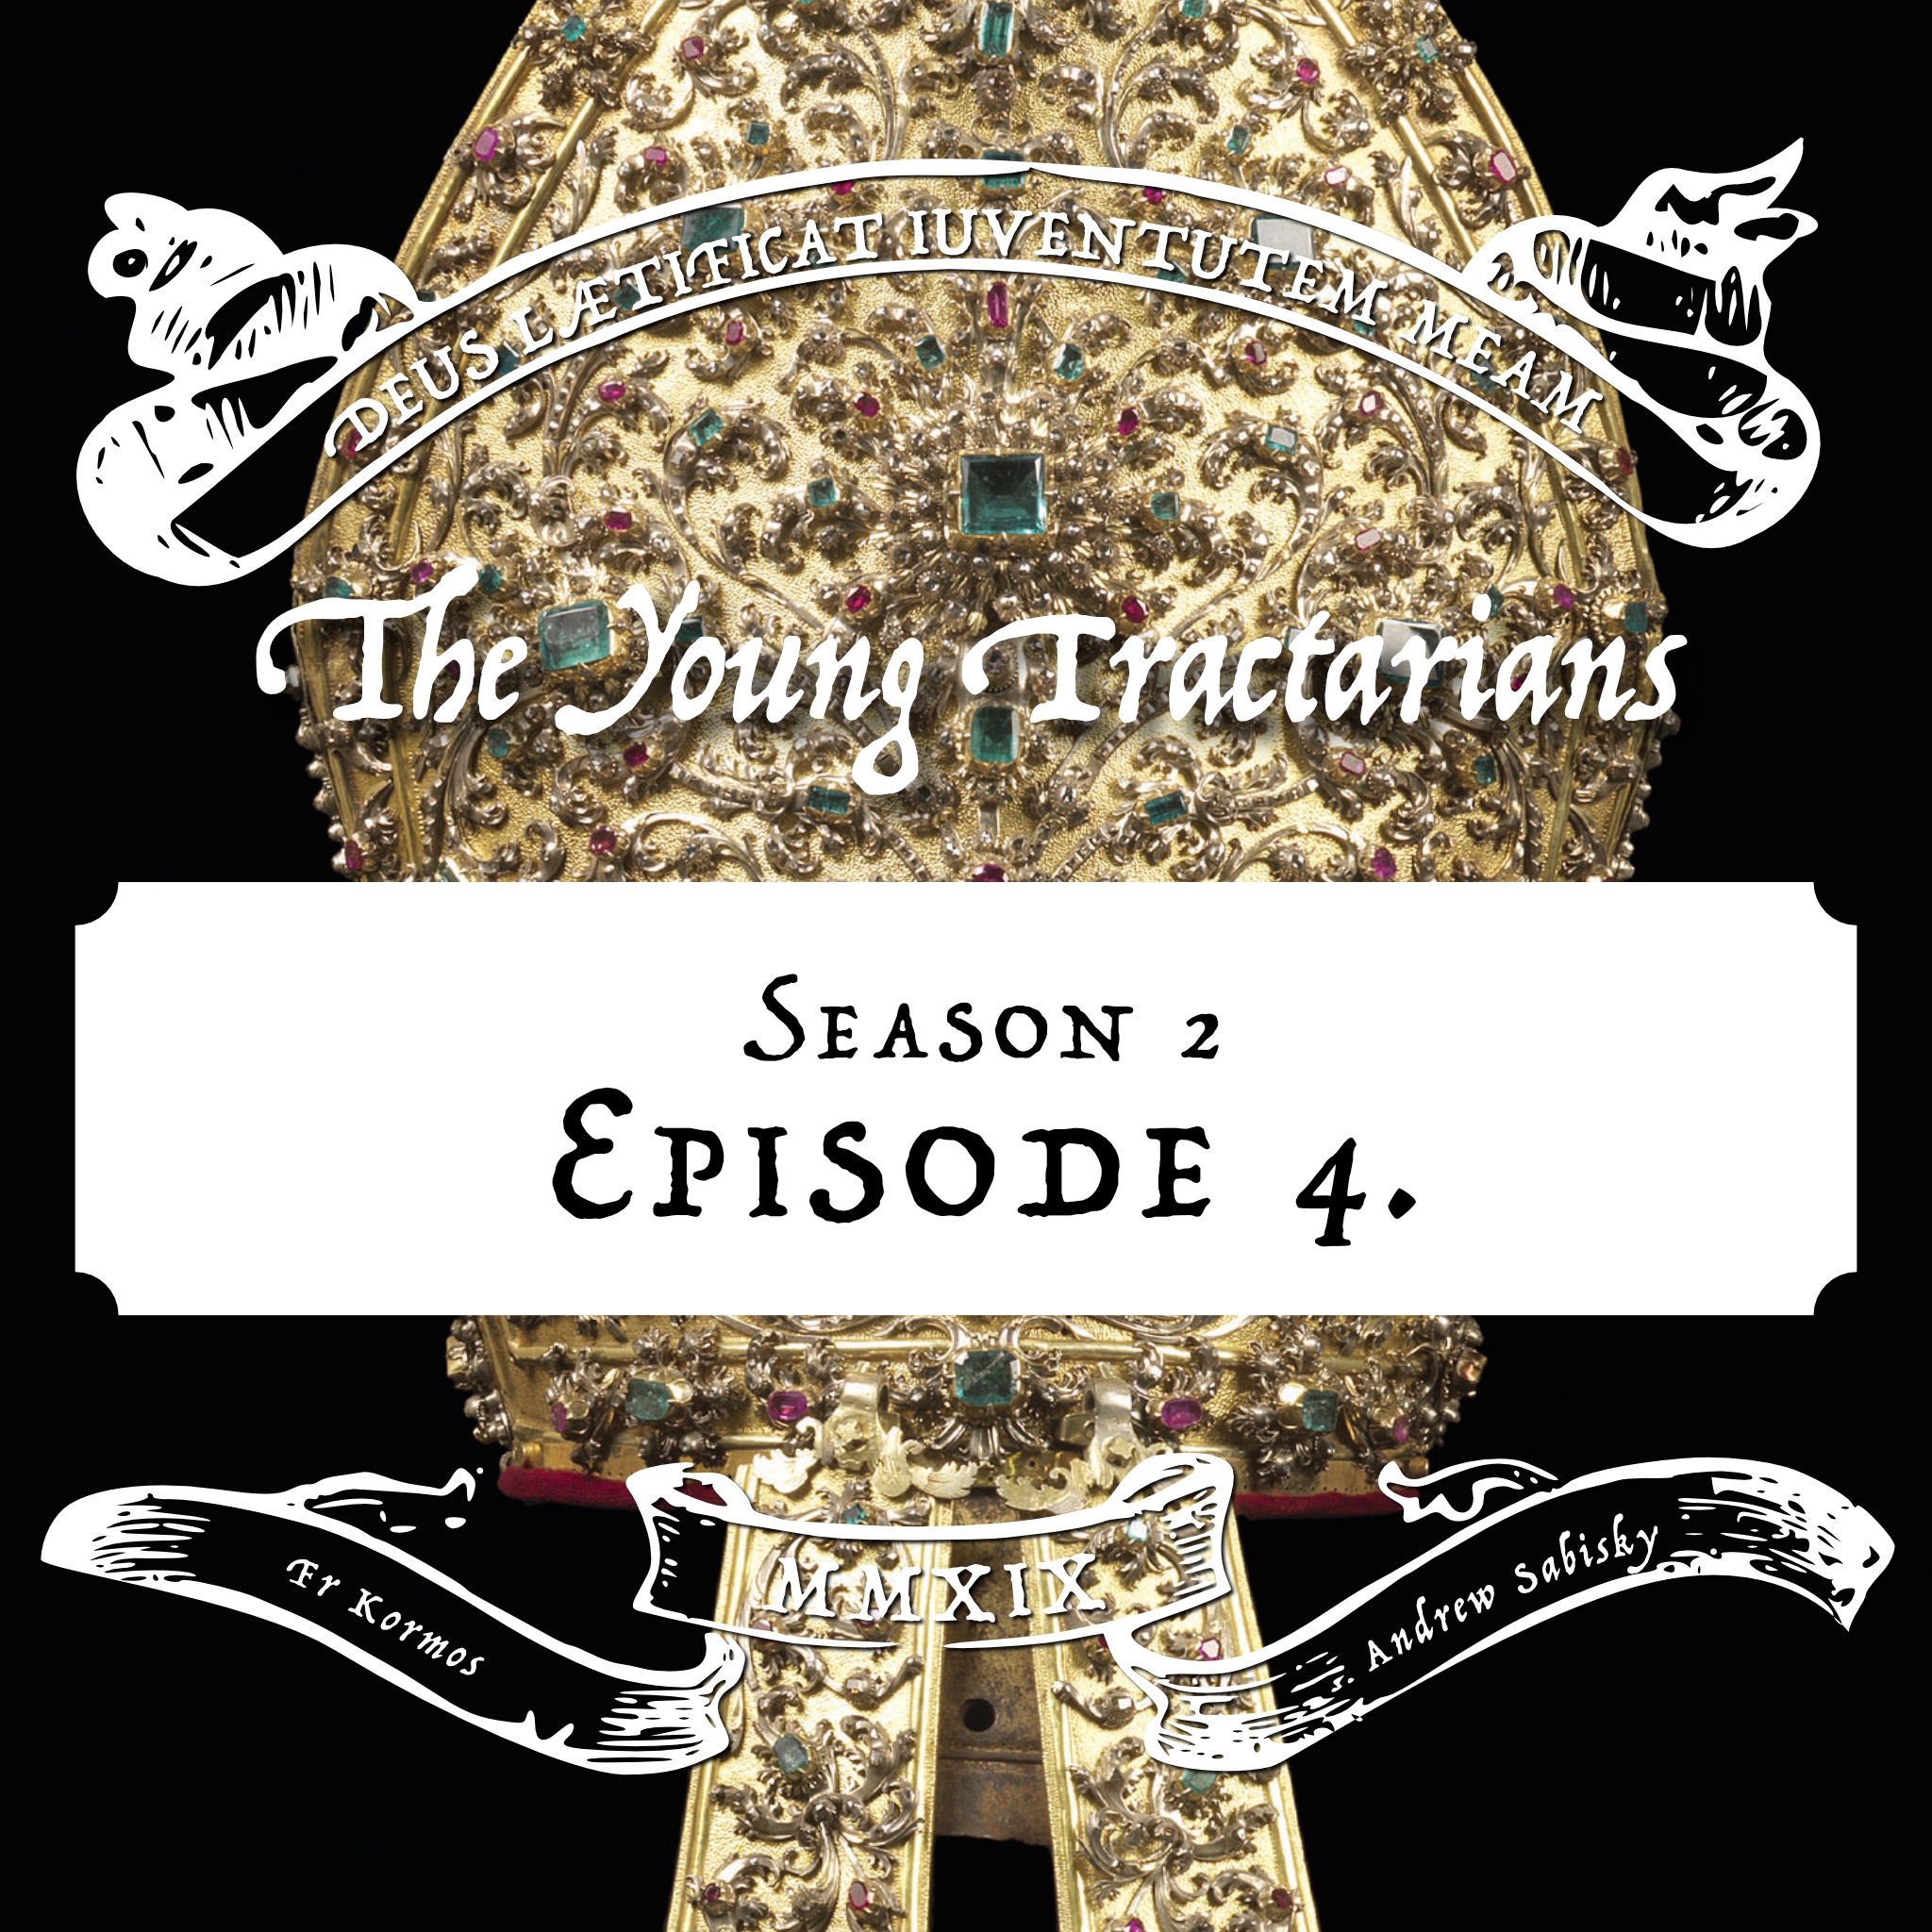 Season 2, Episode 4